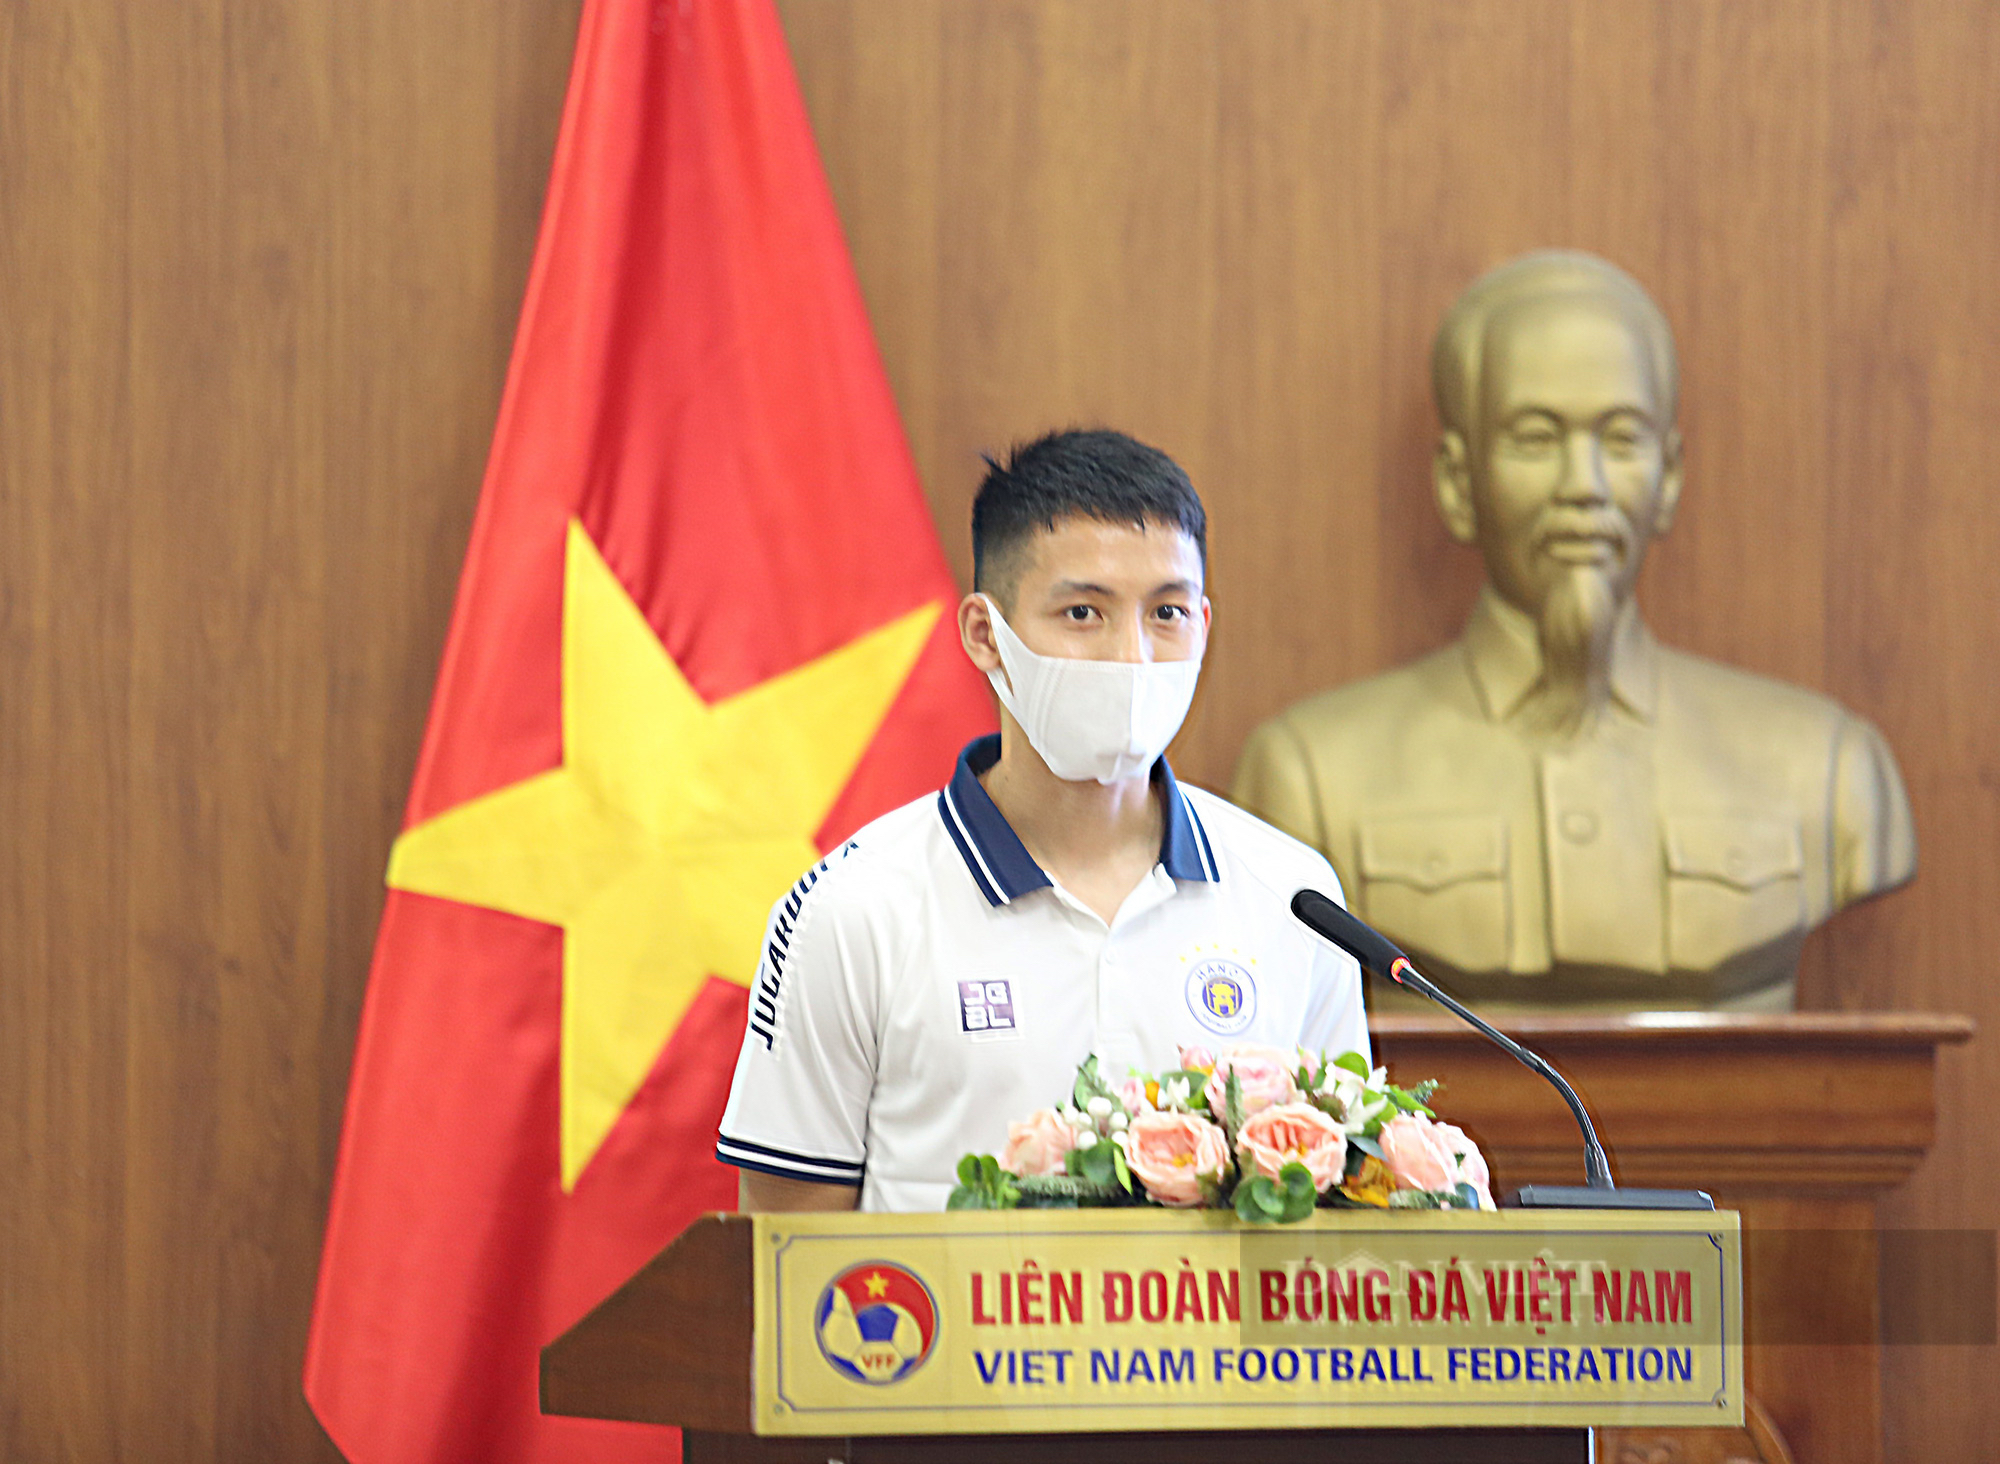 Hơn 400 cầu thủ chuyên nghiệp Việt Nam được hỗ trợ 9 tỷ đồng tiền bảo hiểm - Ảnh 2.